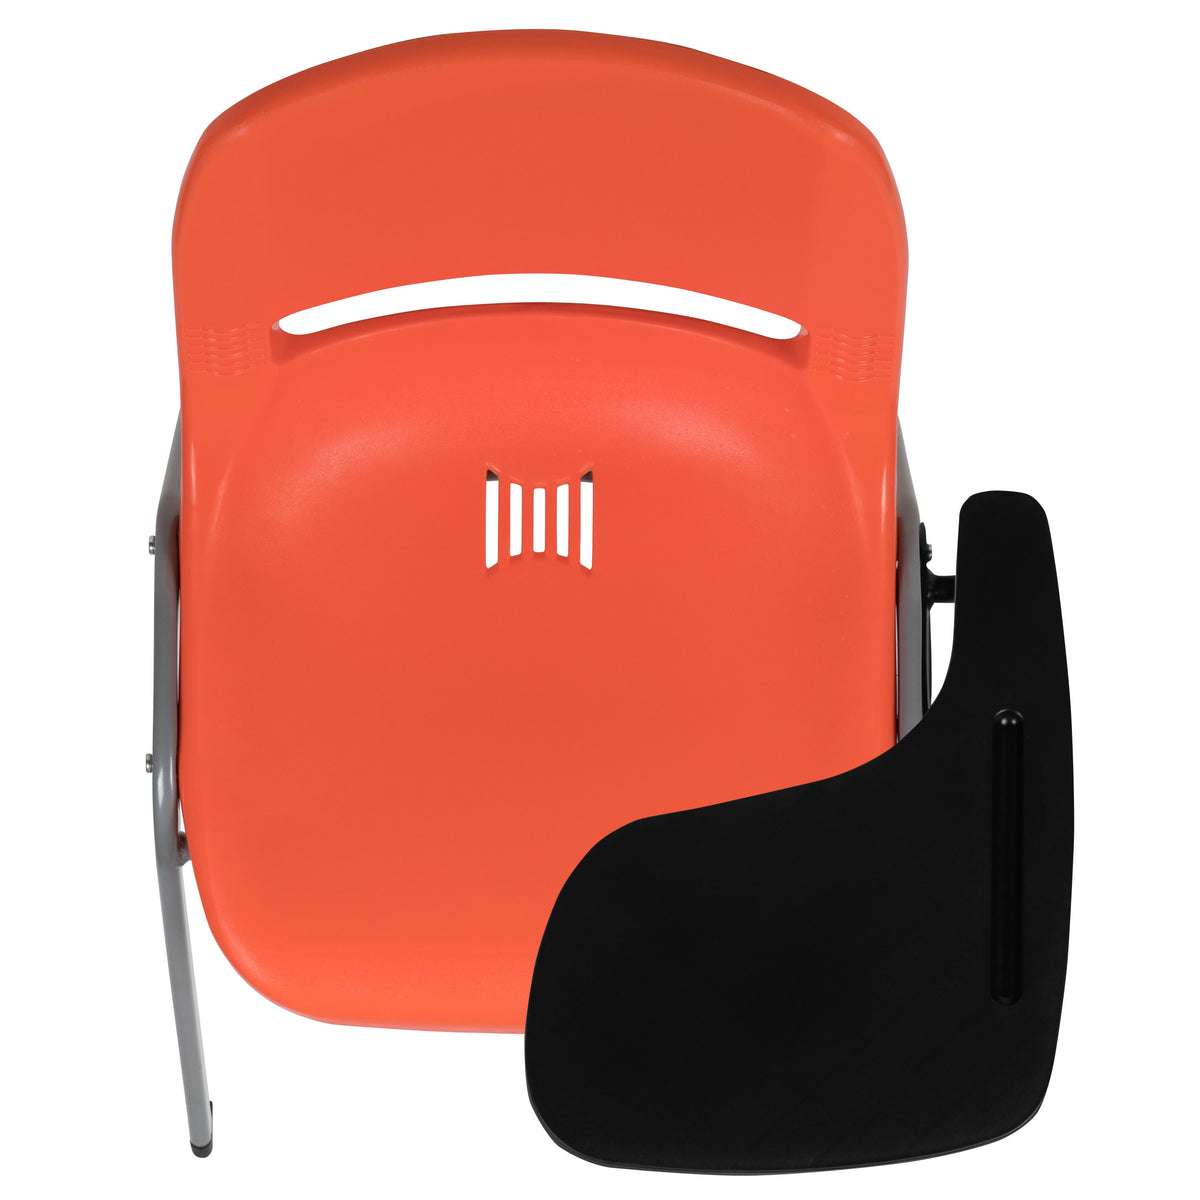 Orange |#| Orange Ergonomic Shell Chair with Left Handed Flip-Up Tablet - Tablet Arm Desk